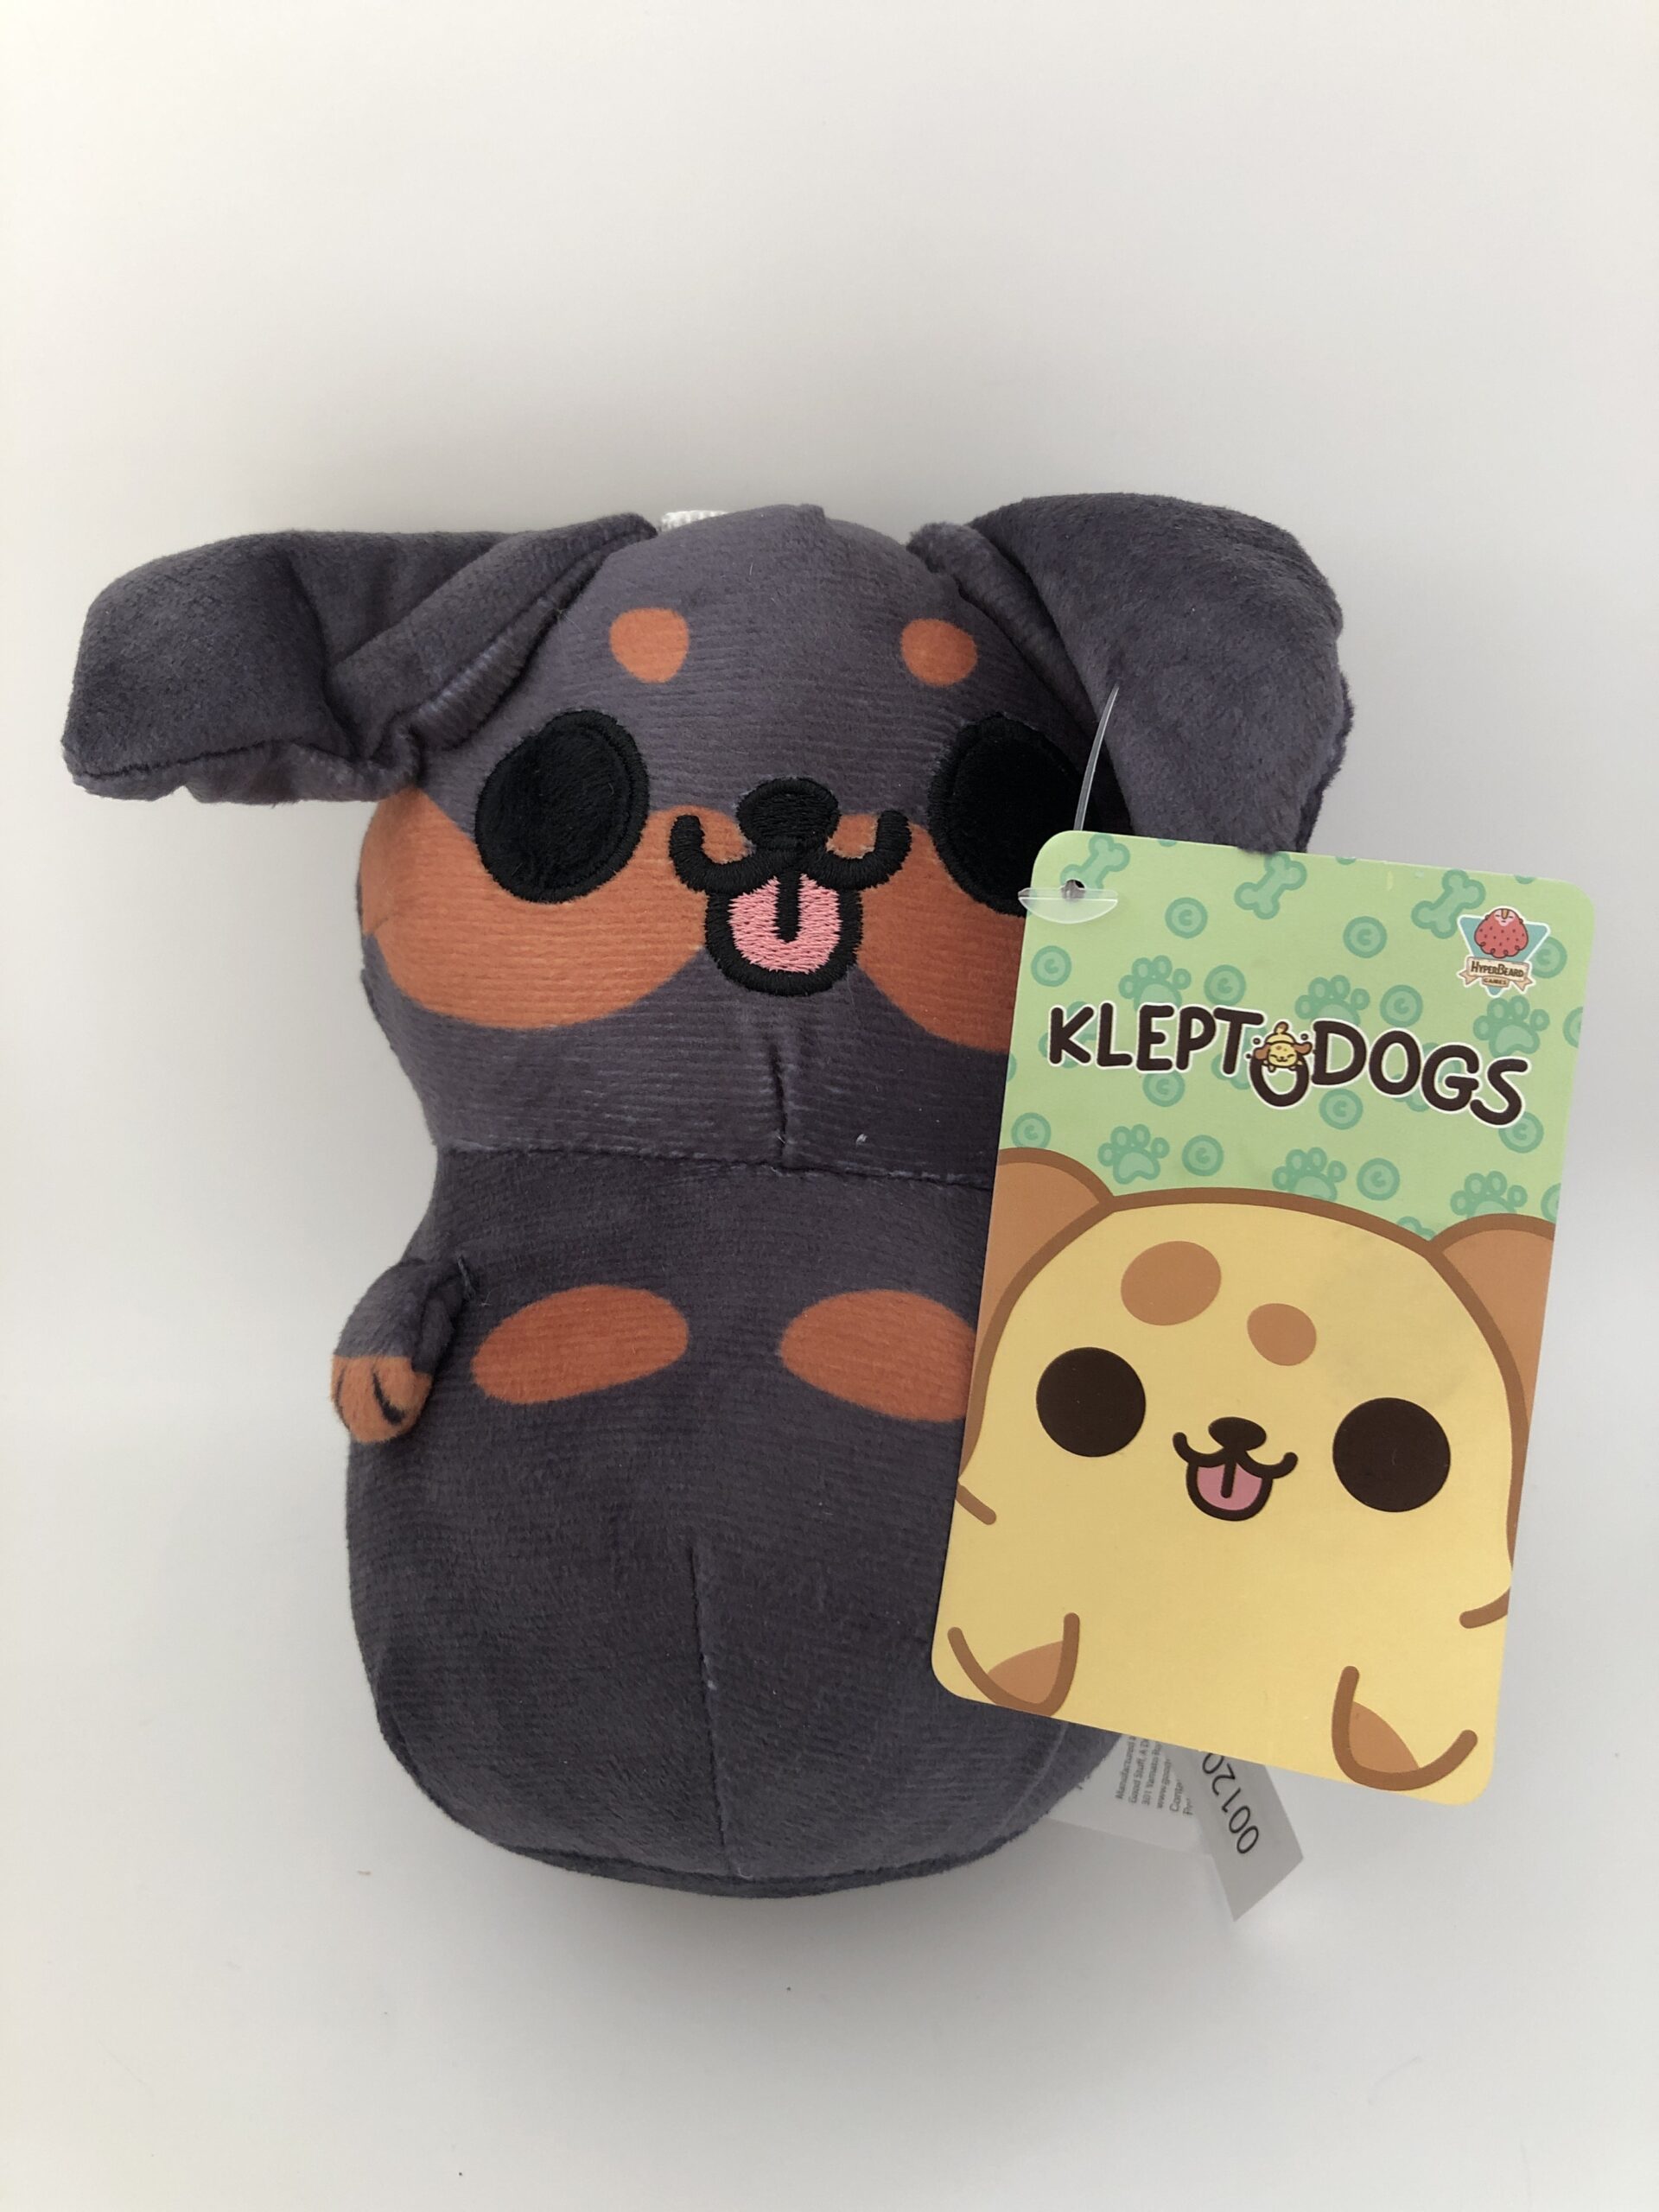 KLEPTODOGS PLUSH Stuffed Animal 6.5” Klepto Dog Hyperbeard New A12EFPI 